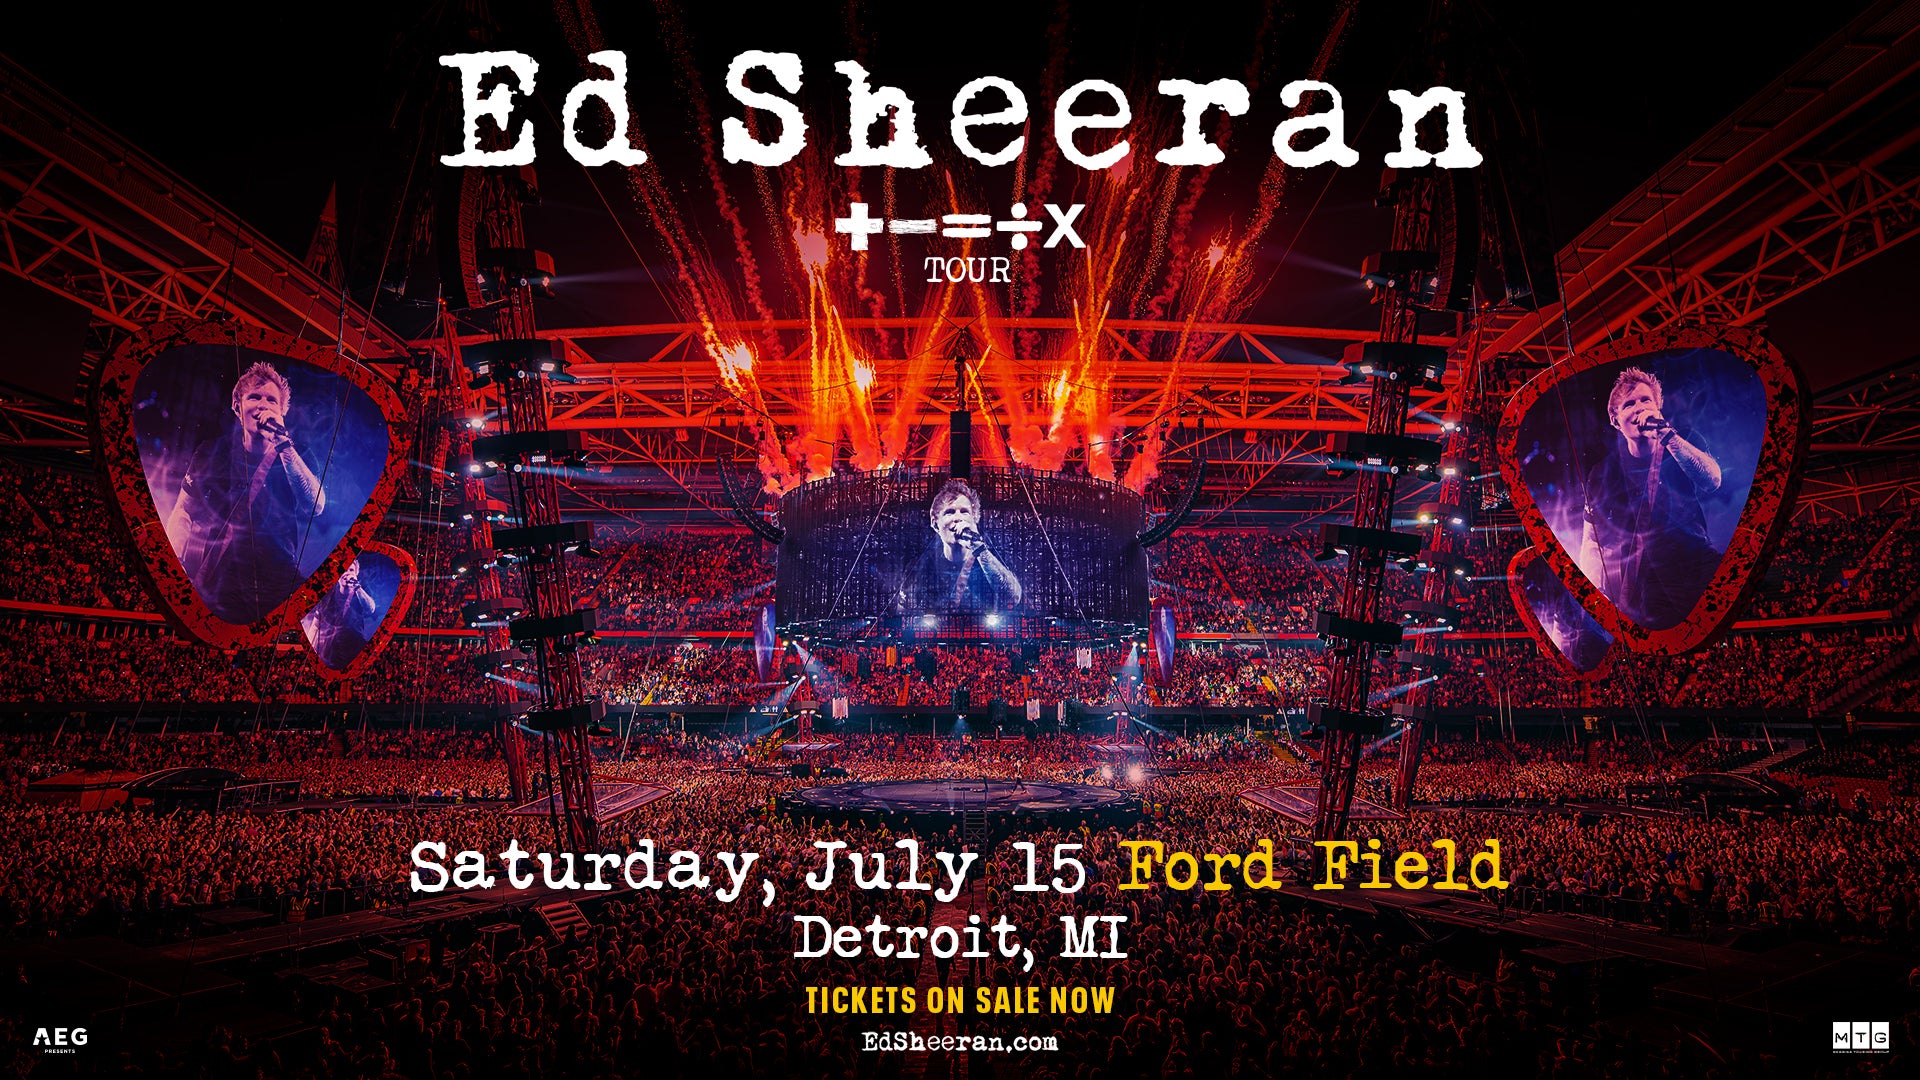 Ed Sheeran “+ = ÷ x TOUR” Ford Field